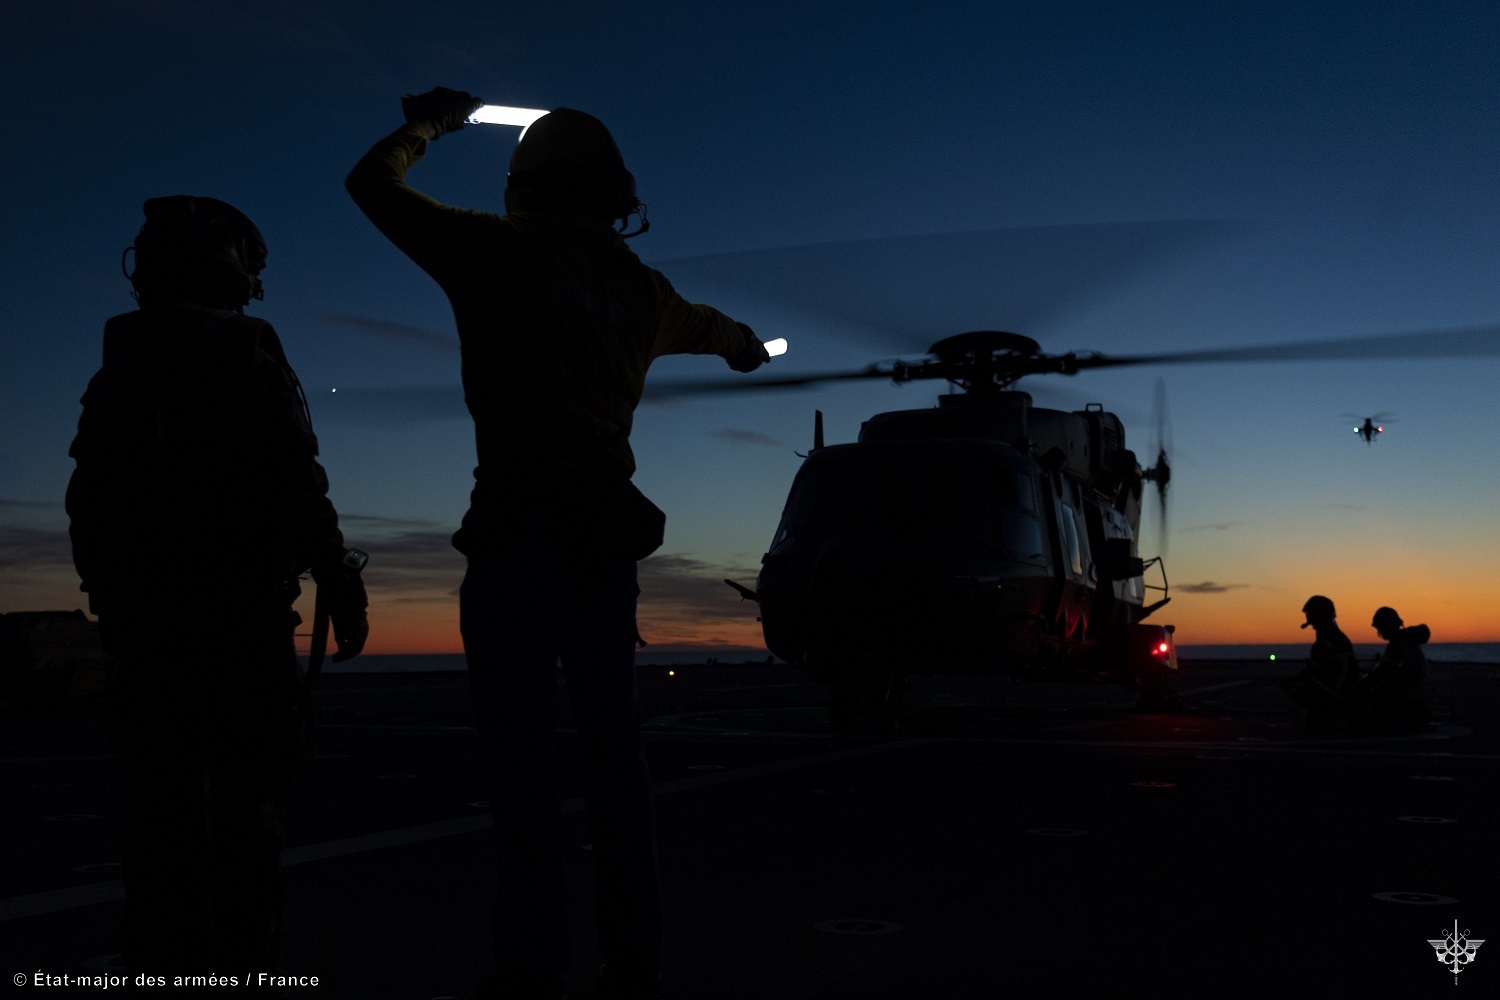 Un hélicoptère décolle de nuit du pont d'un porte-hélicoptères